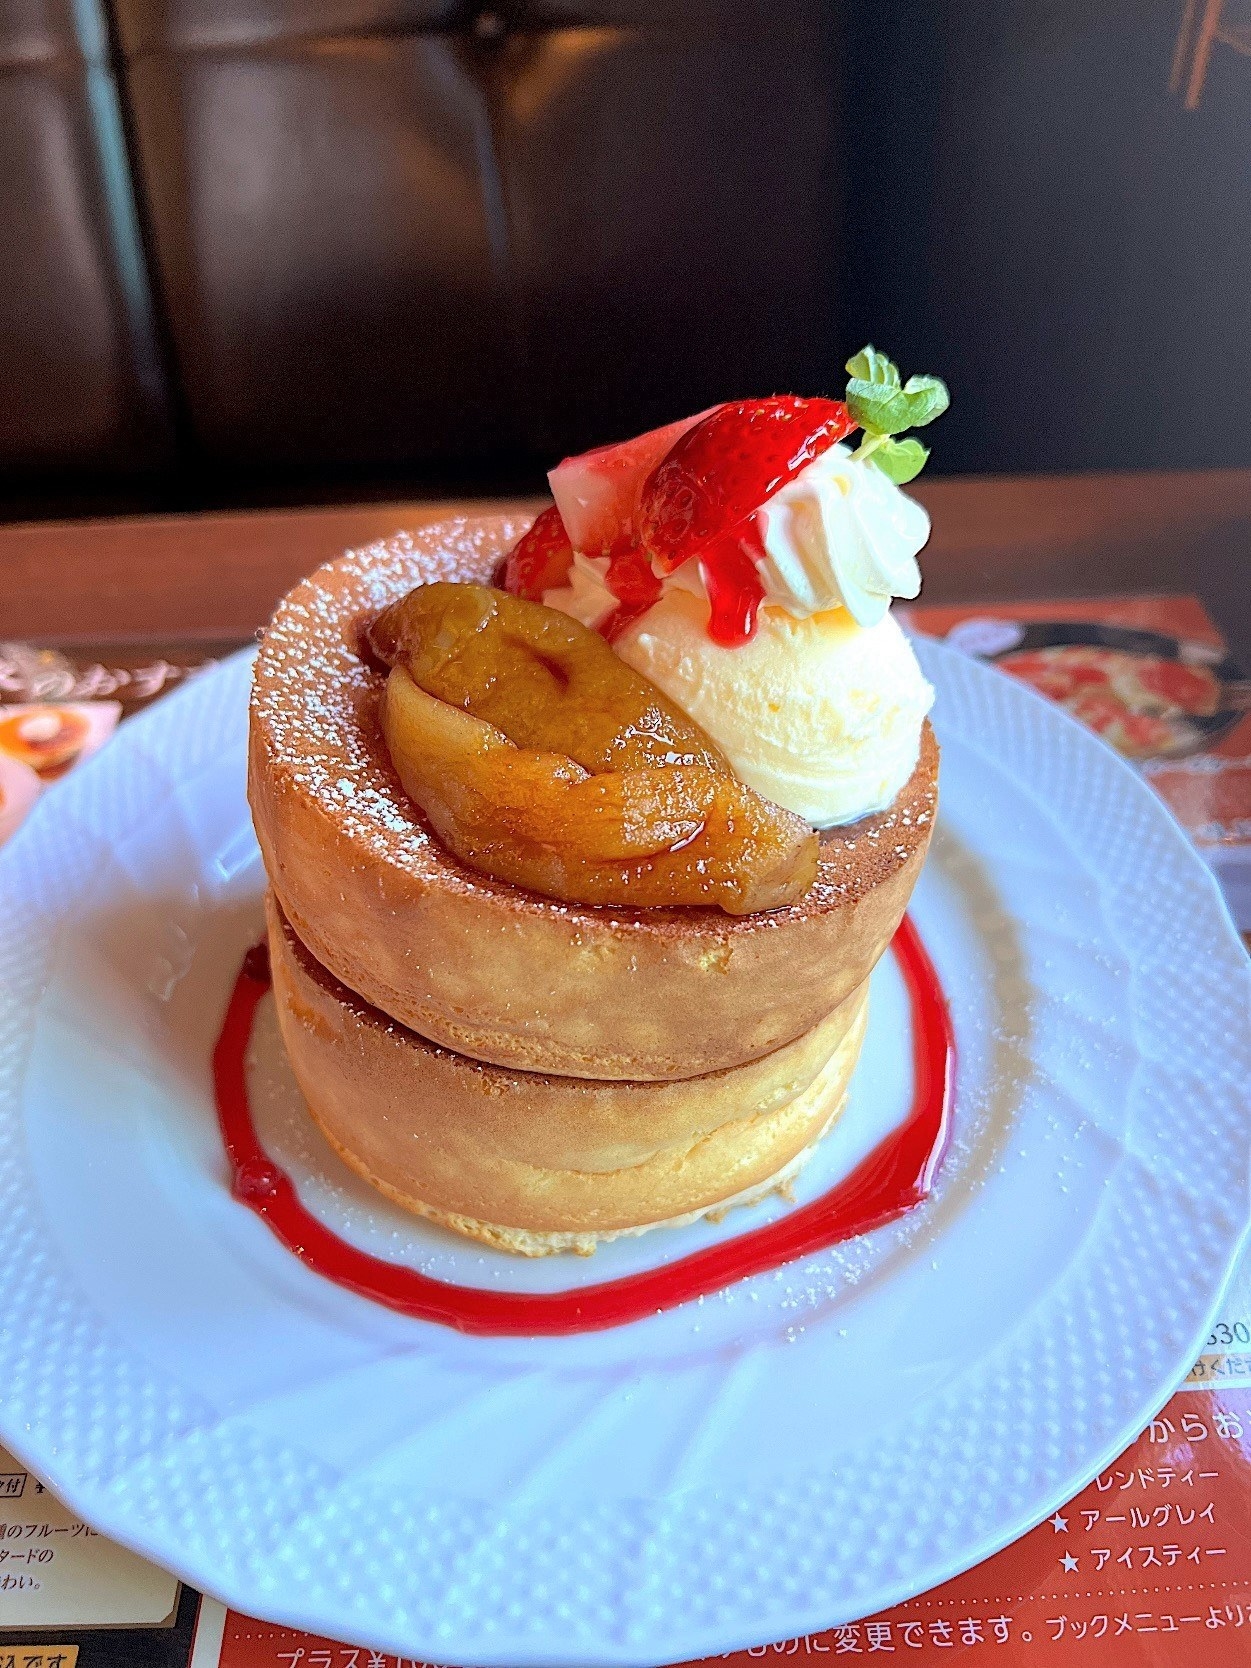 星野珈琲のおすすめスイーツ「キャラメルりんごと苺のスフレパンケーキ」